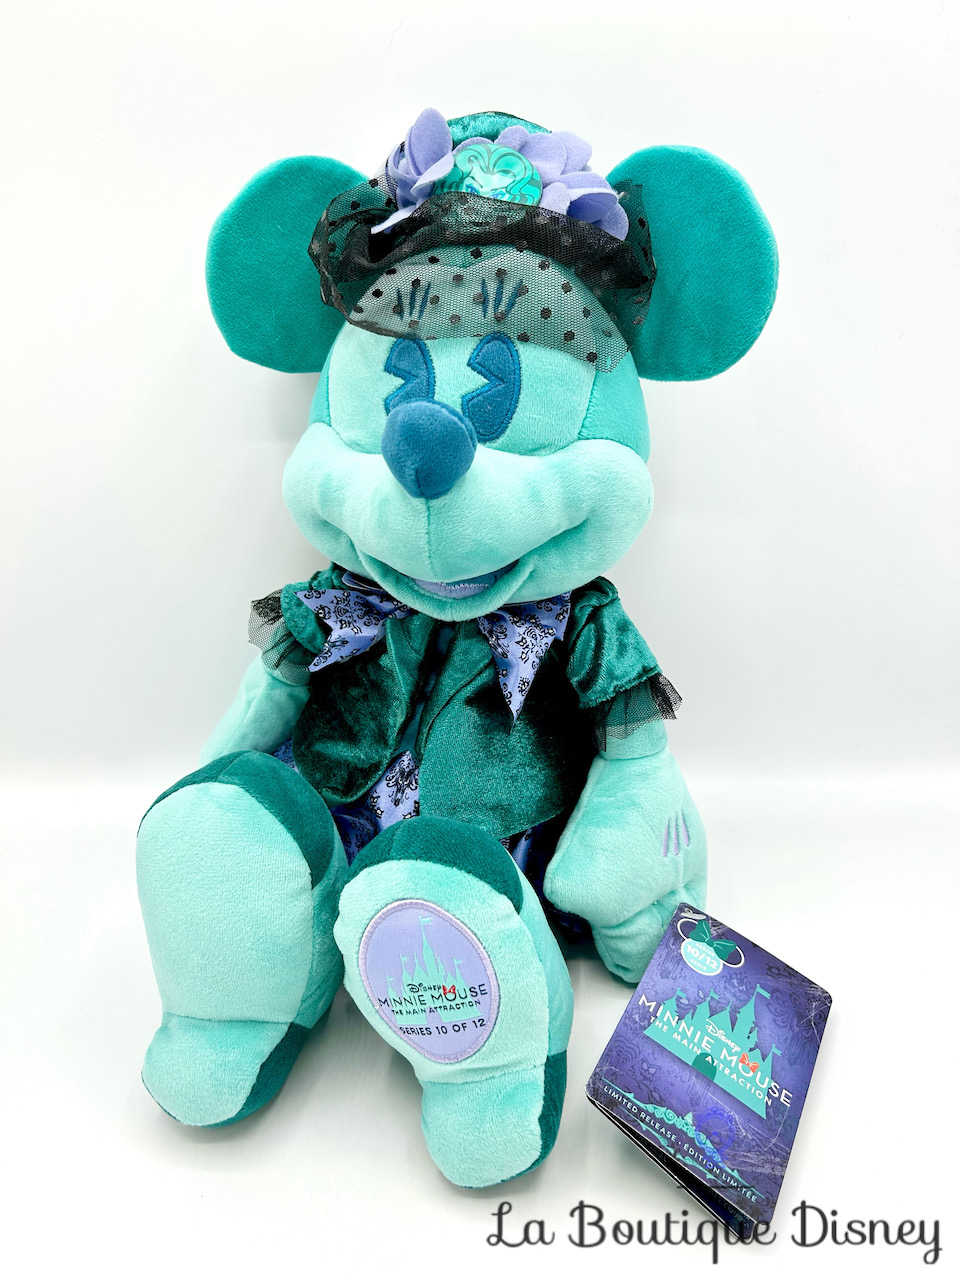 Peluche Minnie Mouse The Main Attraction 10 sur 12 Haunted Mansion Disney Store 2020 Édition limitée 43 cm